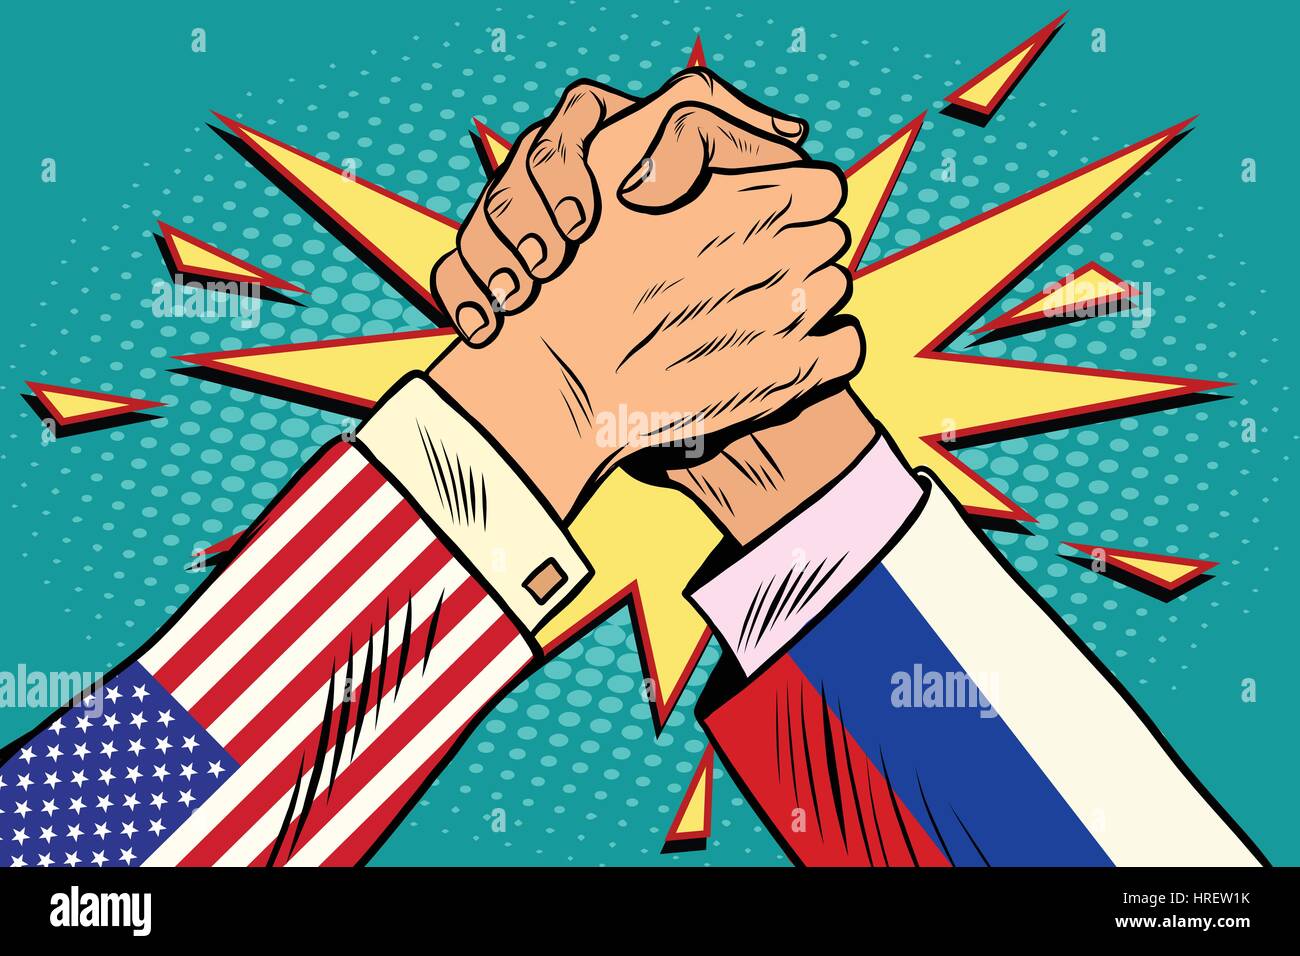 USA vs Russia. Arm wrestling fight confrontation, pop art retro vector